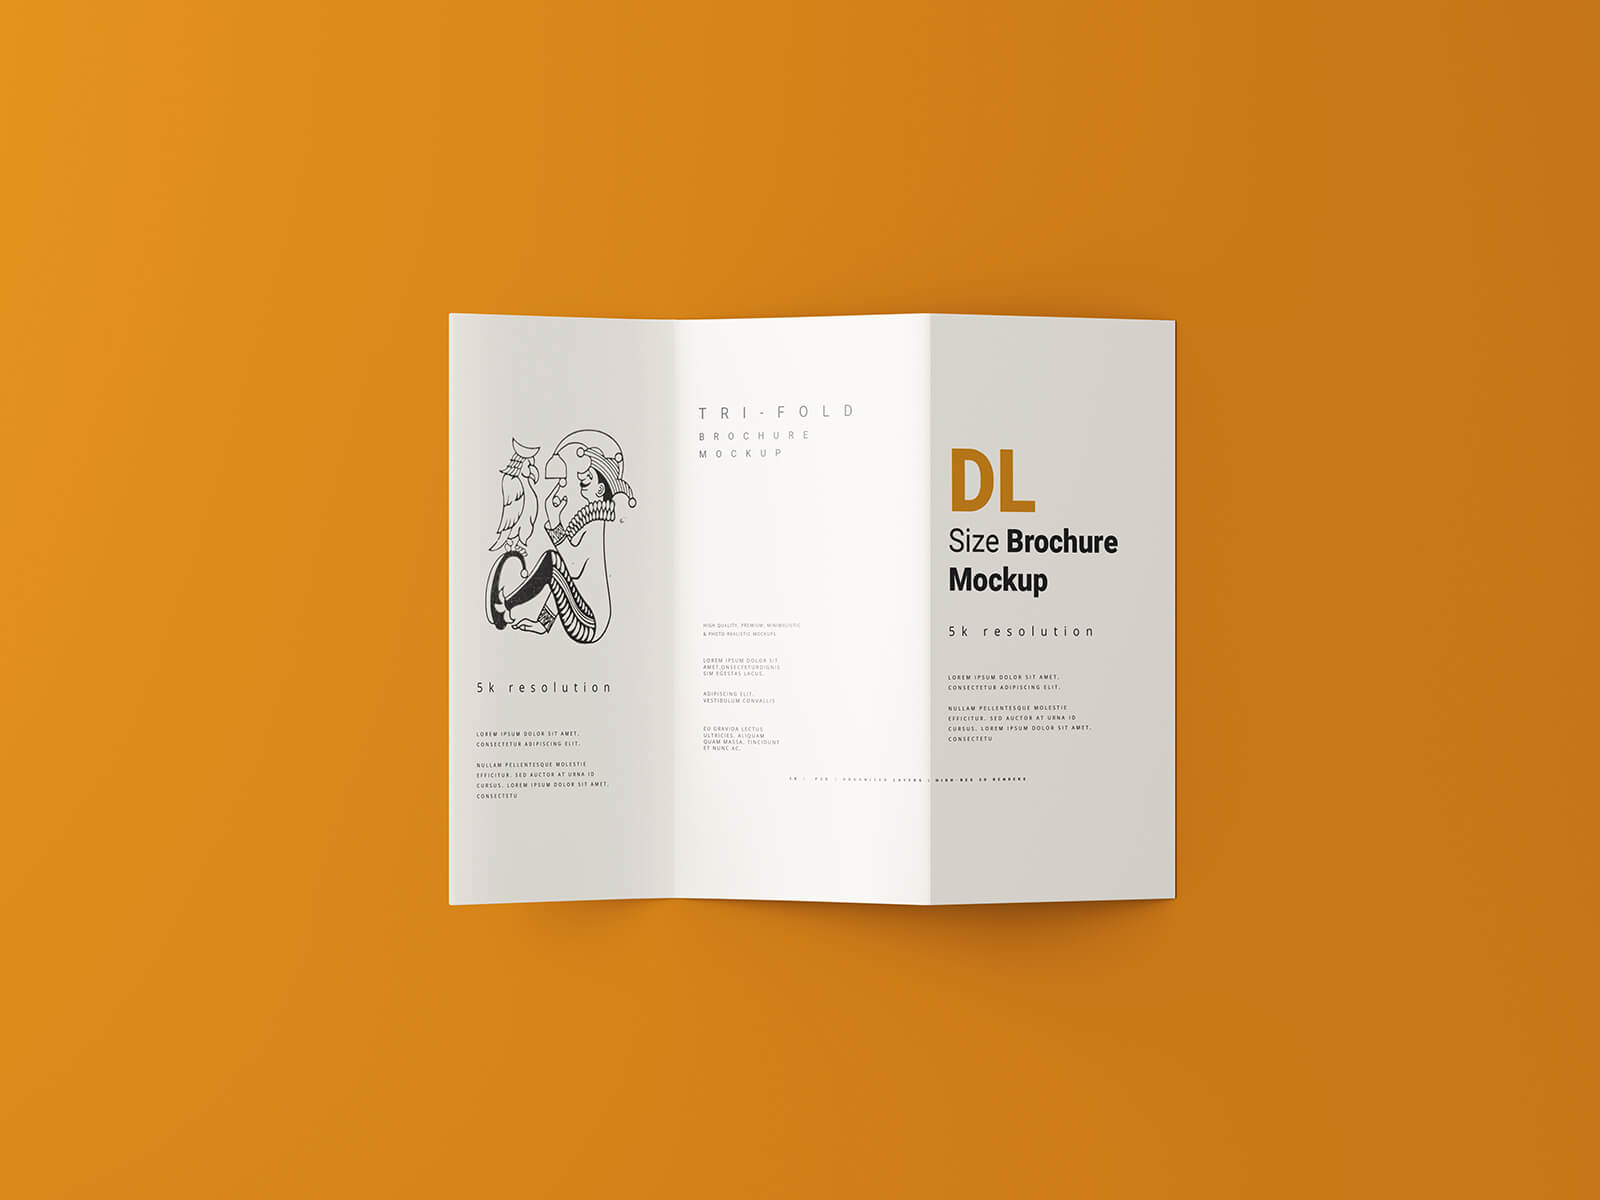 Free DL Three Fold Brochure Mockup PSD